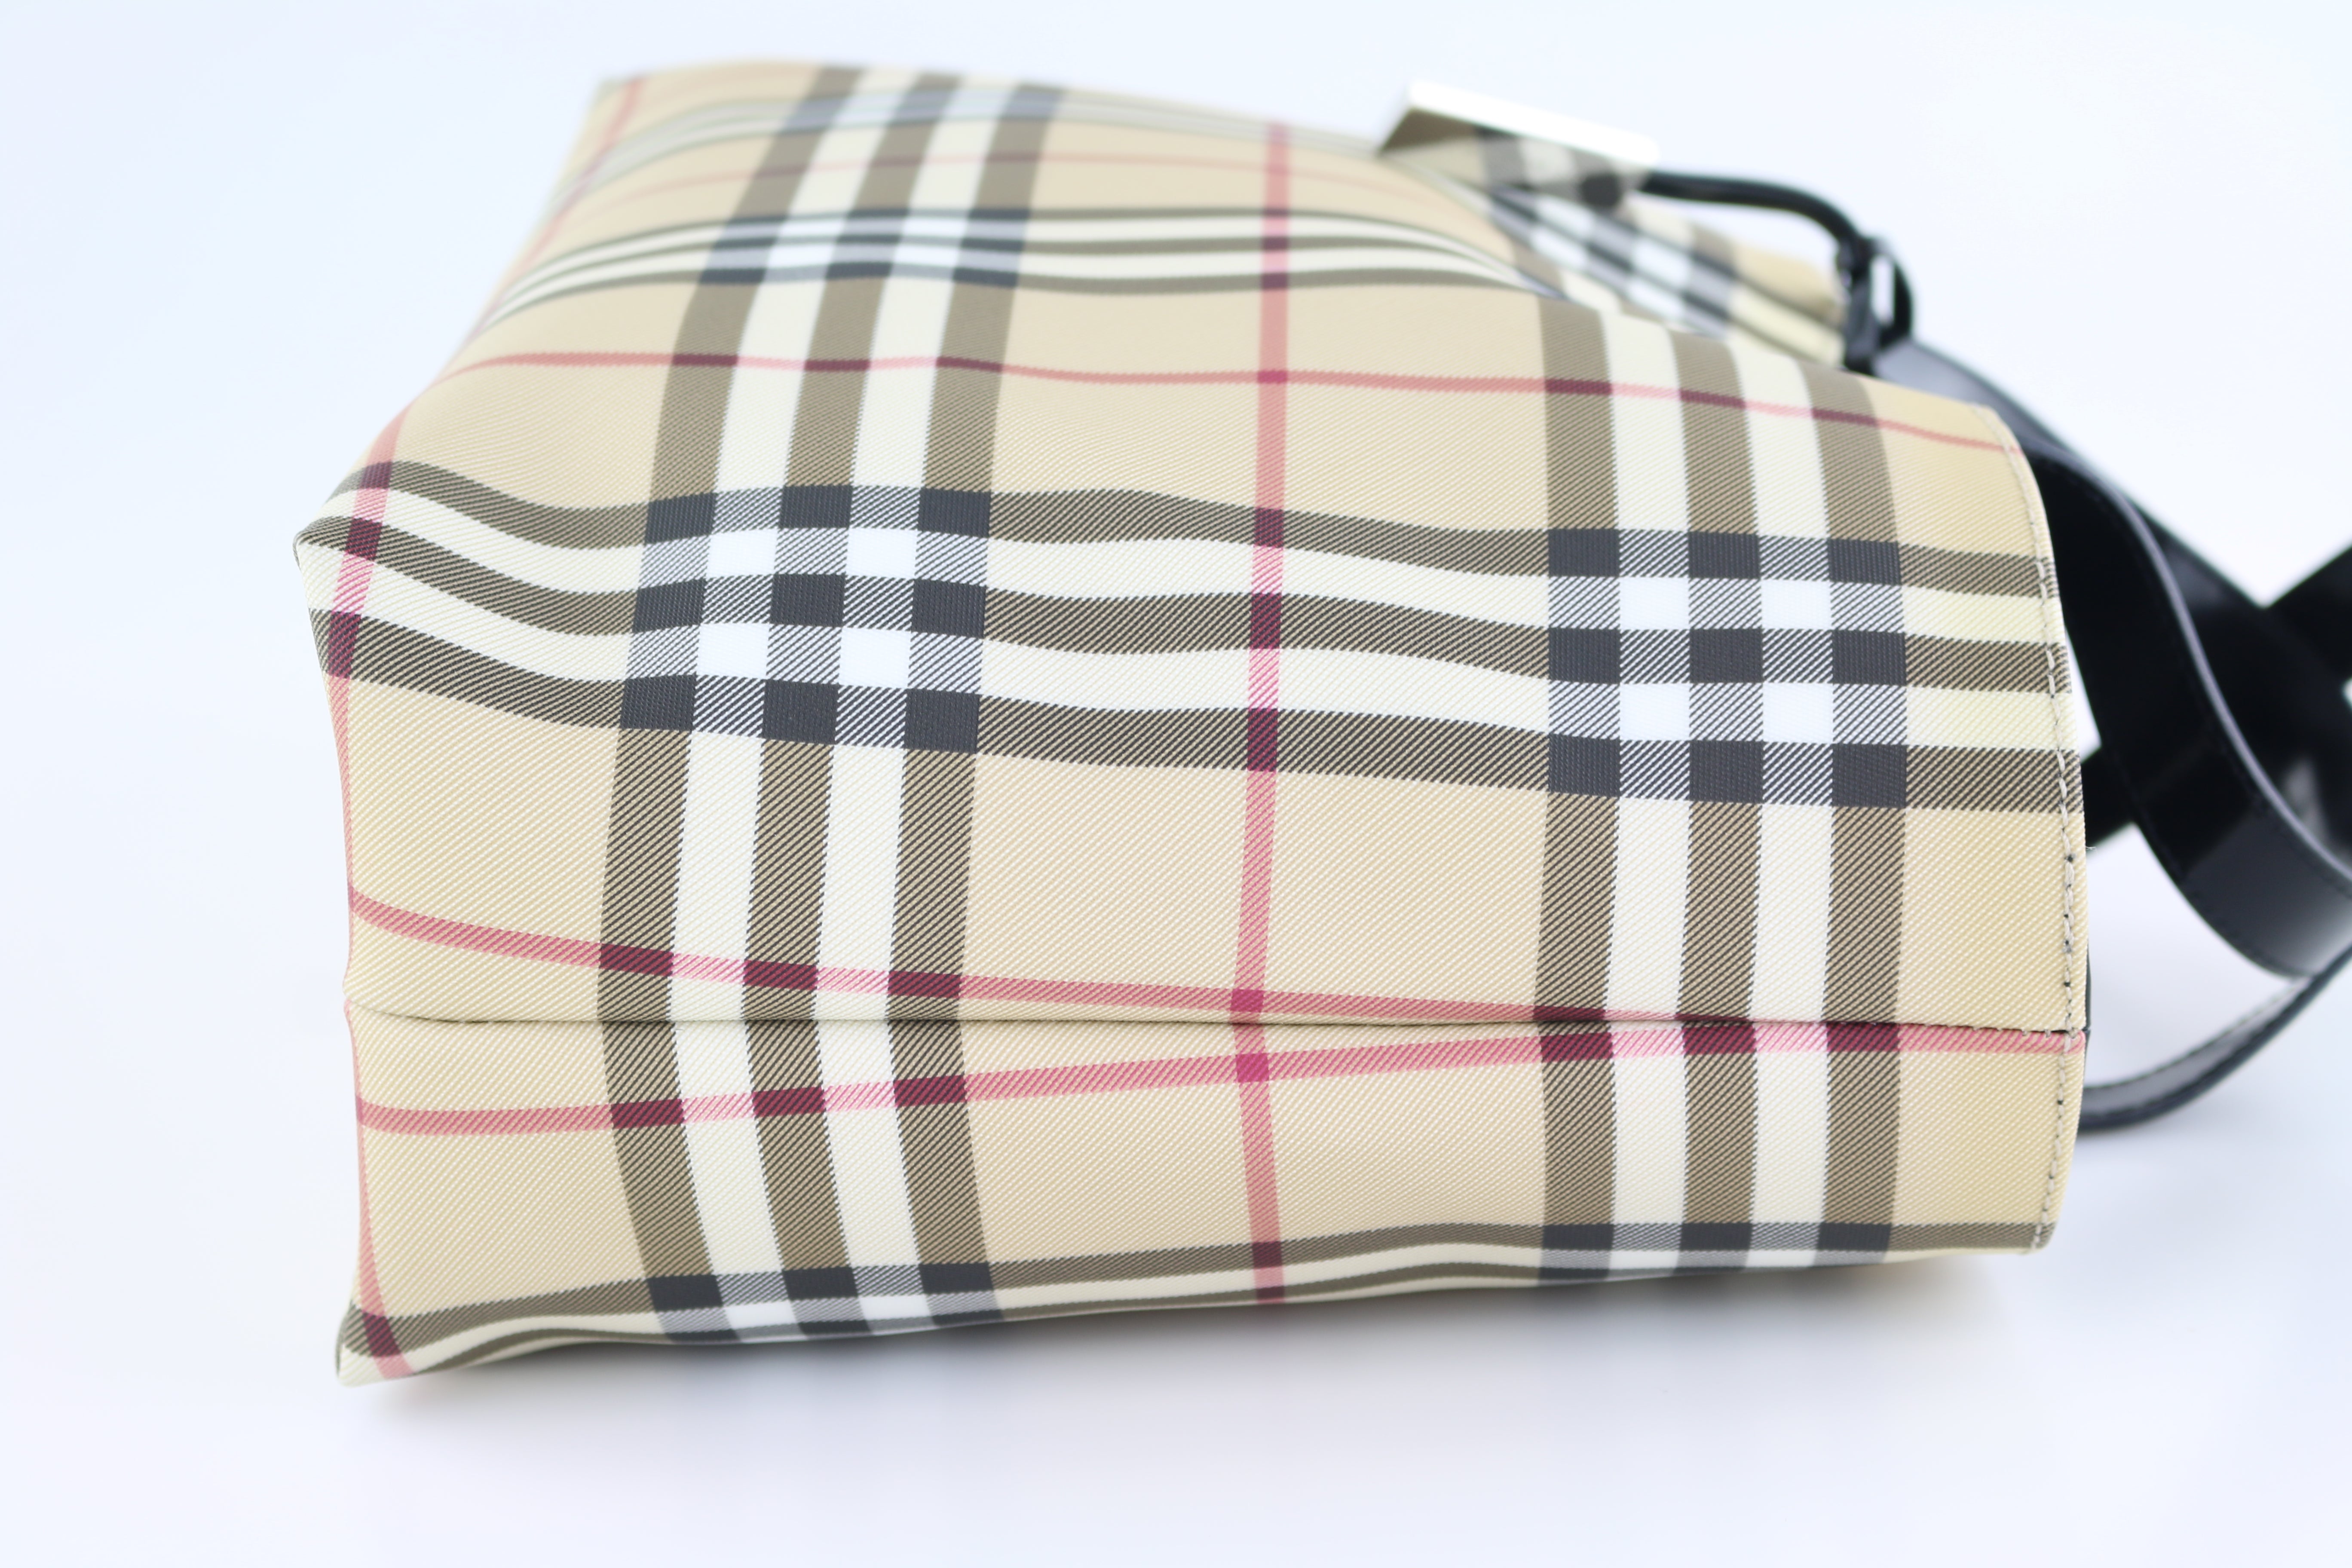 Burberry Nova Check Canvas Small Tote Bag - Consigned Designs